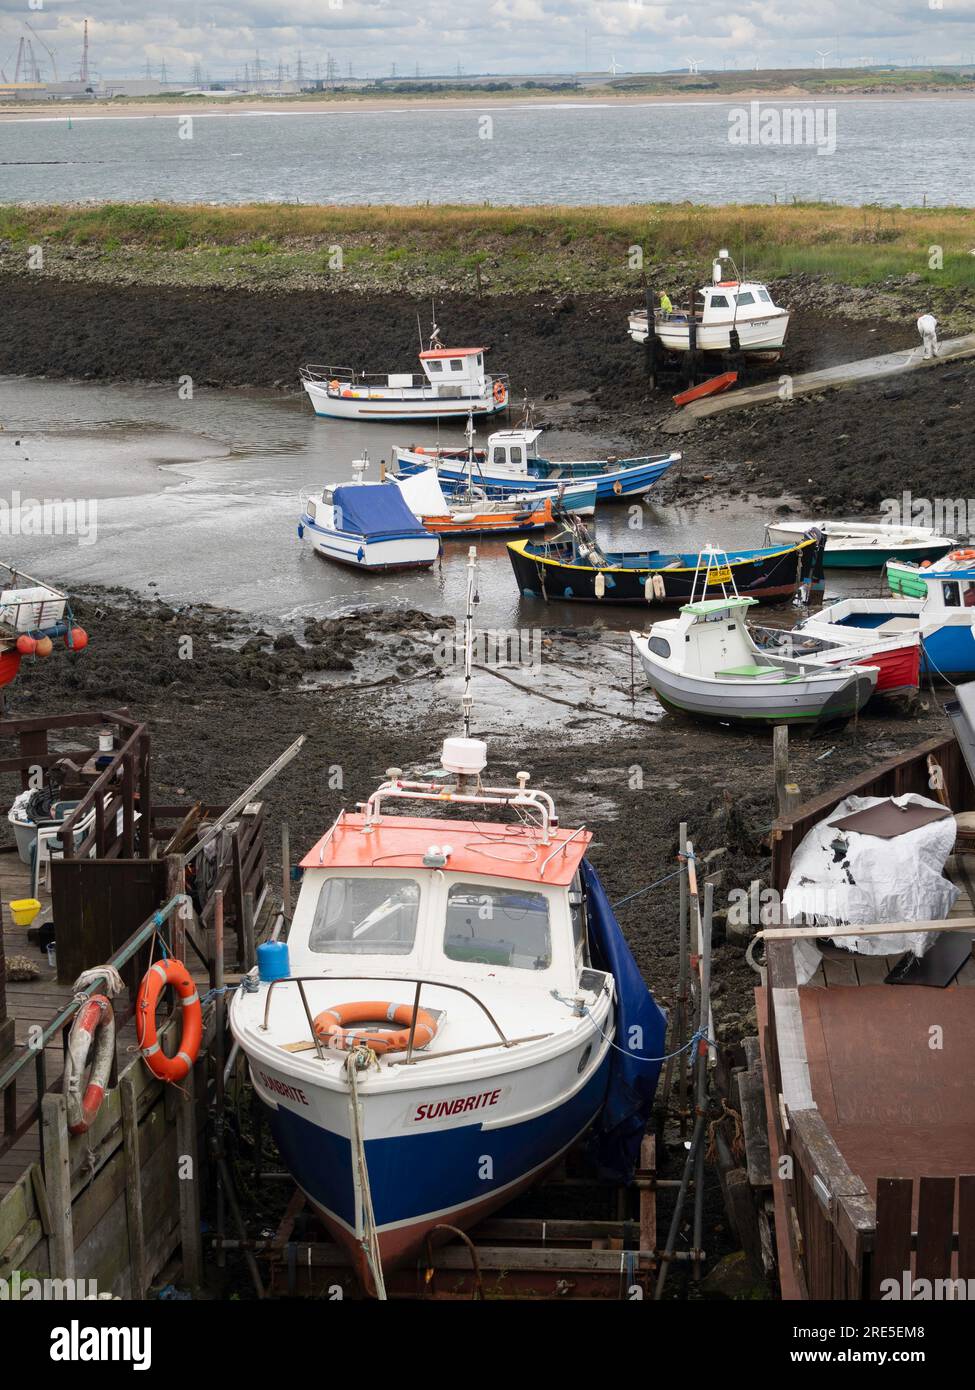 Bateau de pêche Sunbrite a fait monter un plateau pour peindre au port de Teesmouth Paddy's Hole Banque D'Images